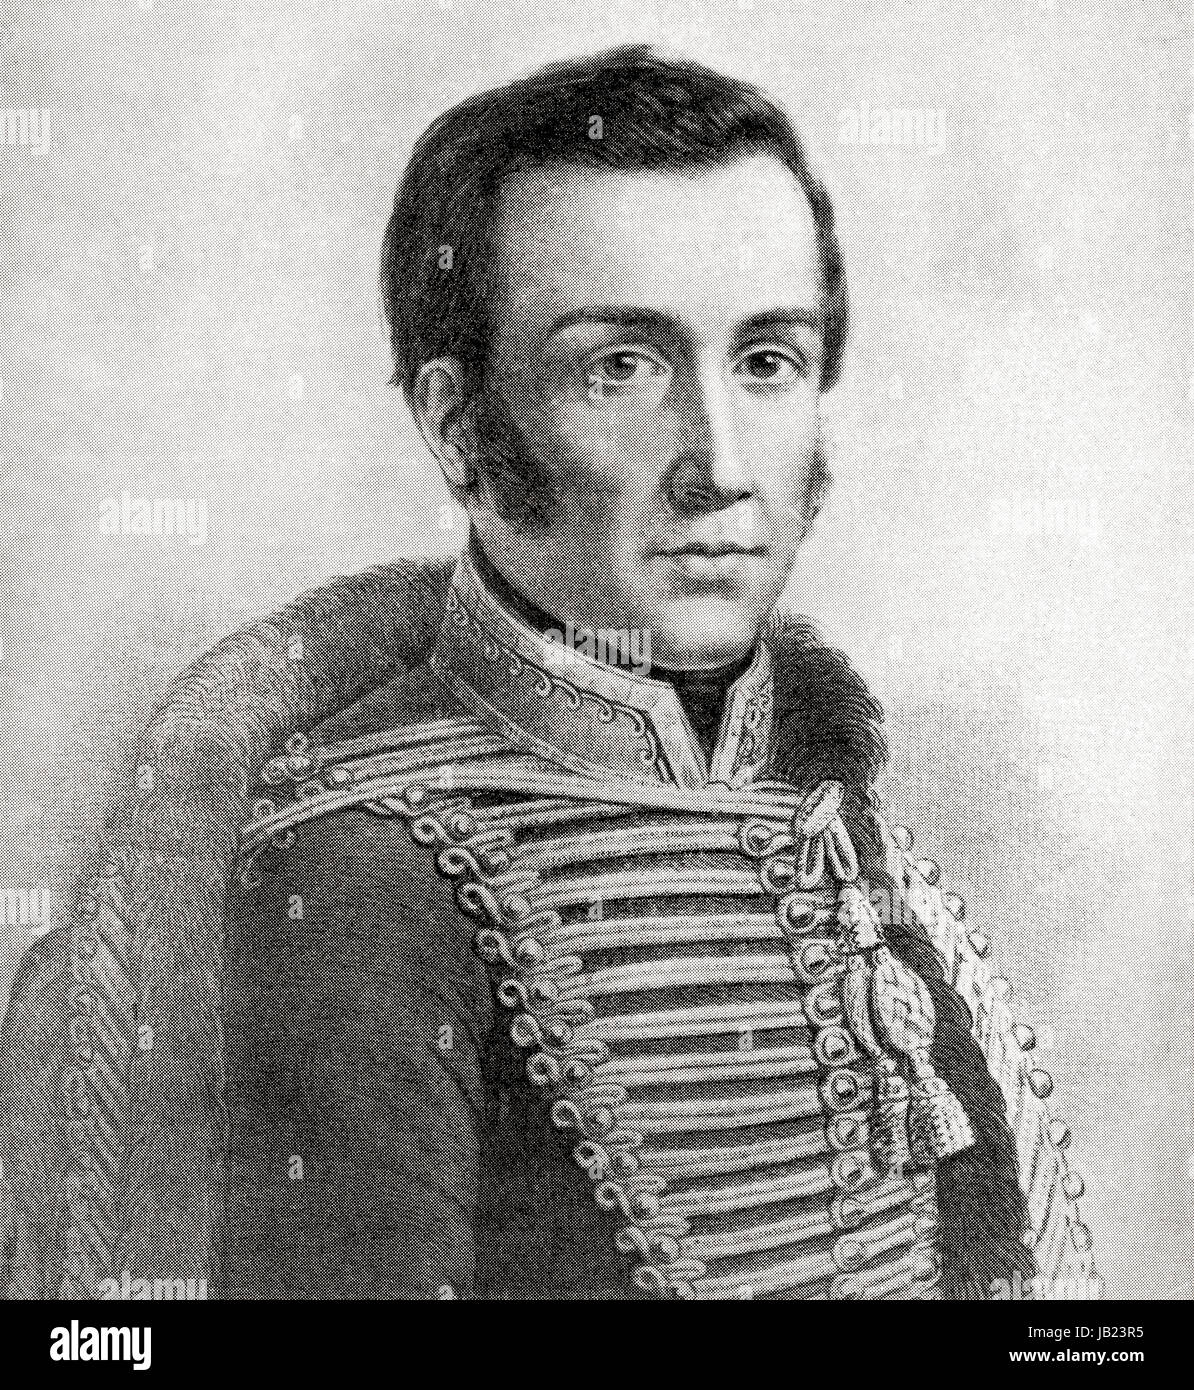 José Miguel Carrera Verdugo, 1785 - 1821. General chileno considerado uno  de los fundadores de Chile independiente,